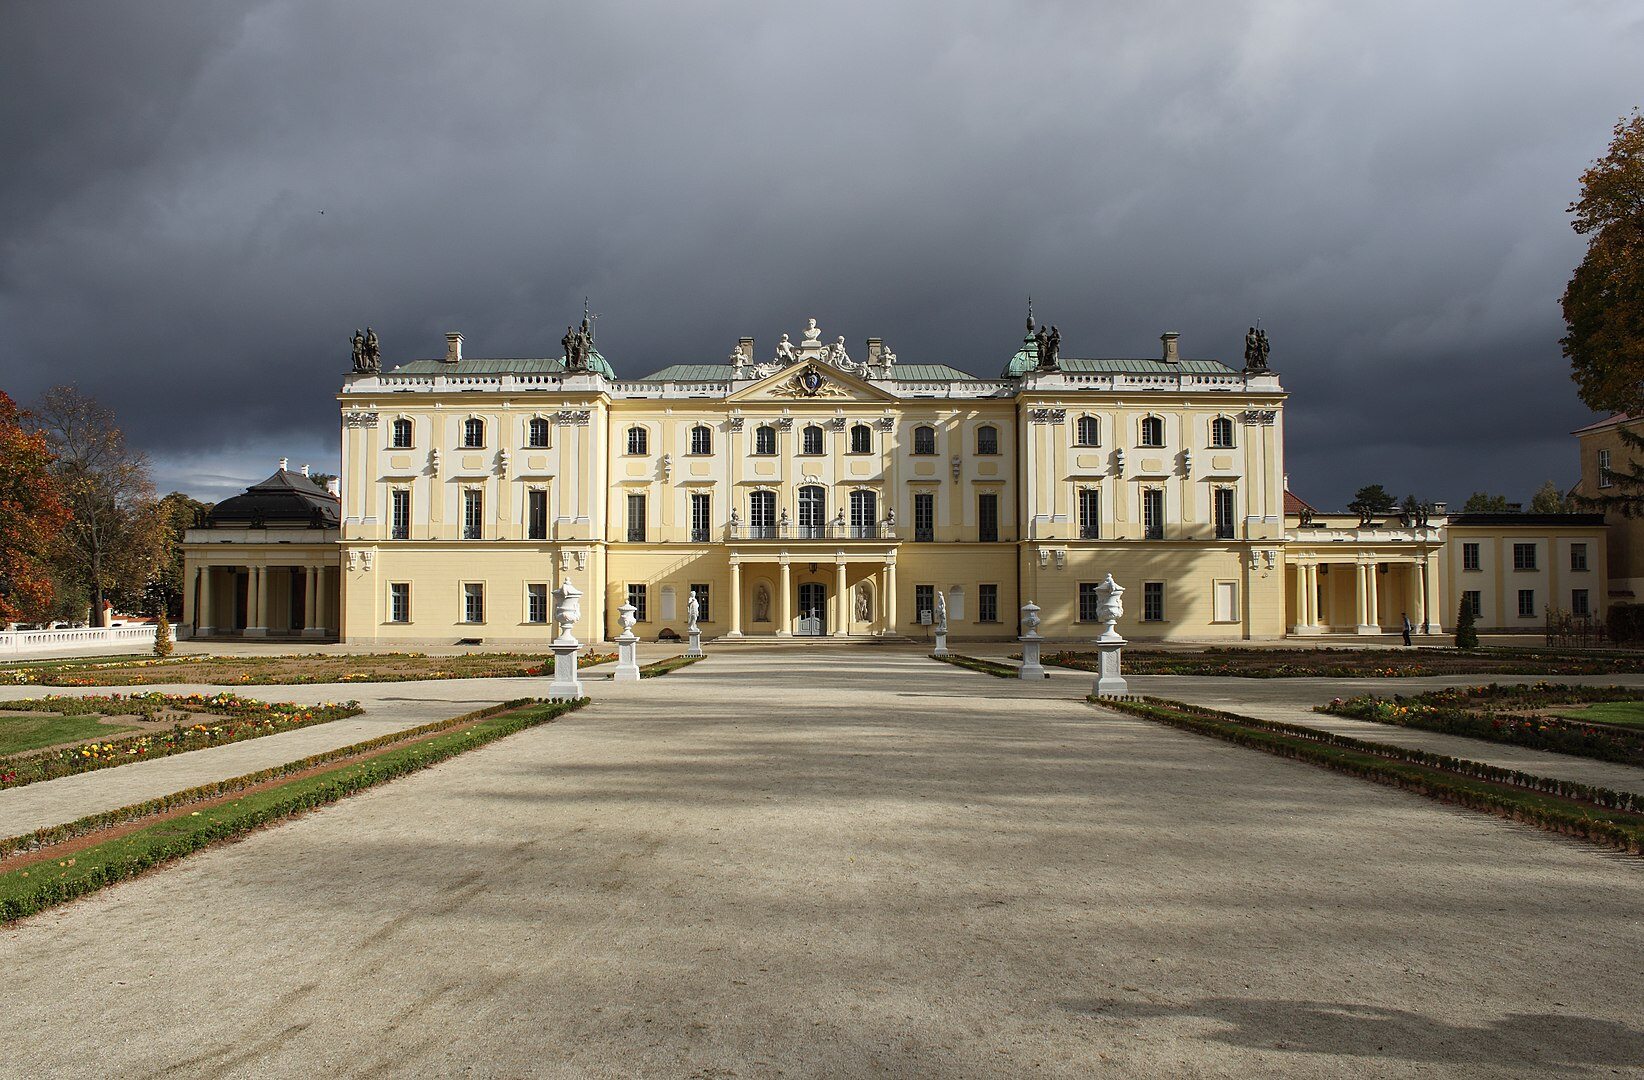 Pałac ze zdjęcia znajduje się w Białymstoku. Jest to: